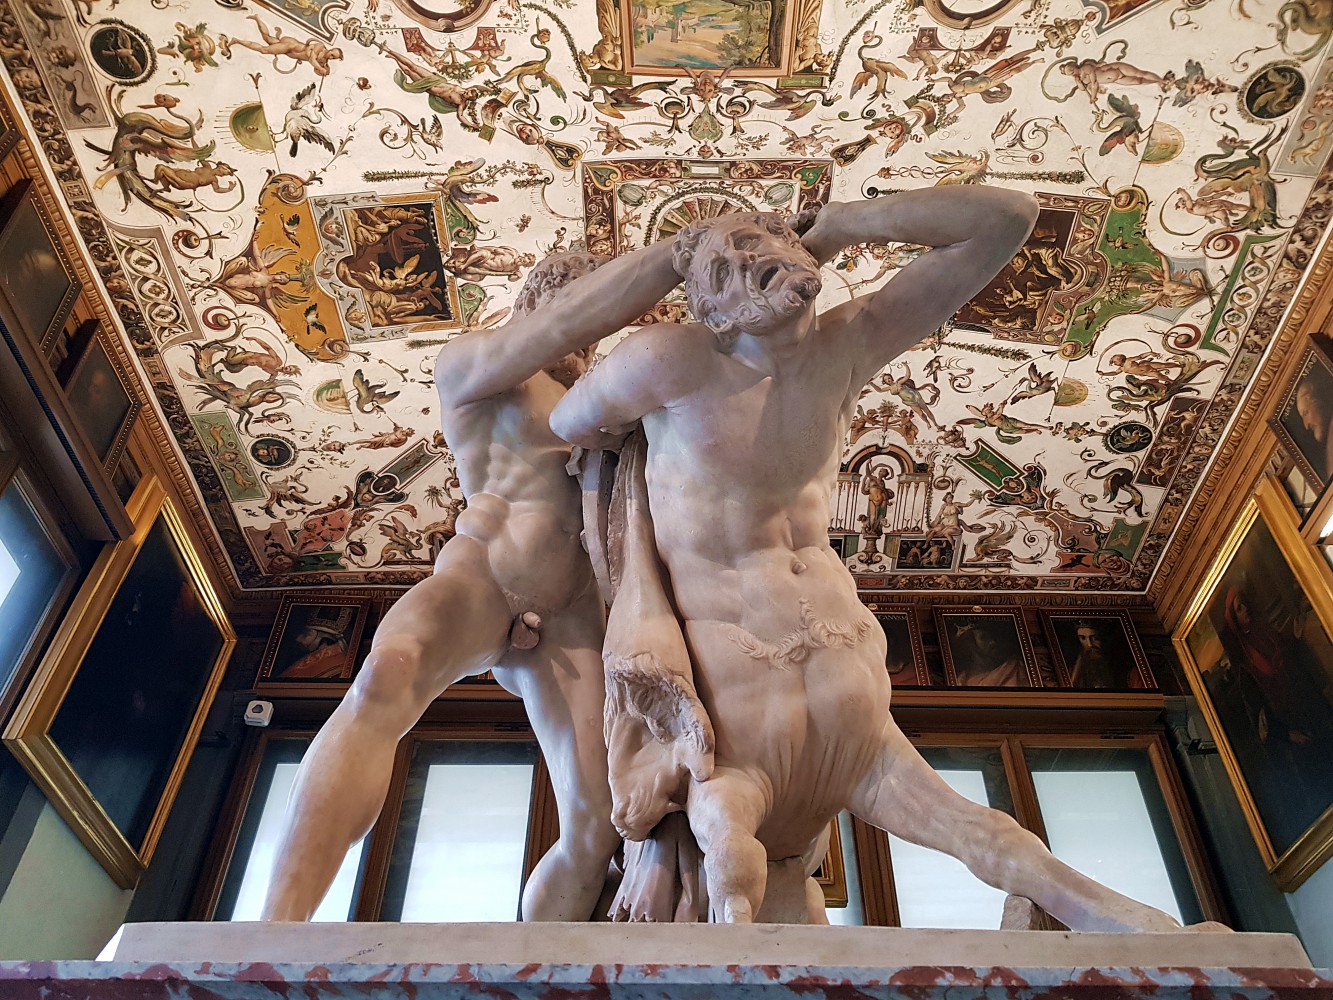 Galleria degli Uffizi: Dei, Eroi e Imperatori